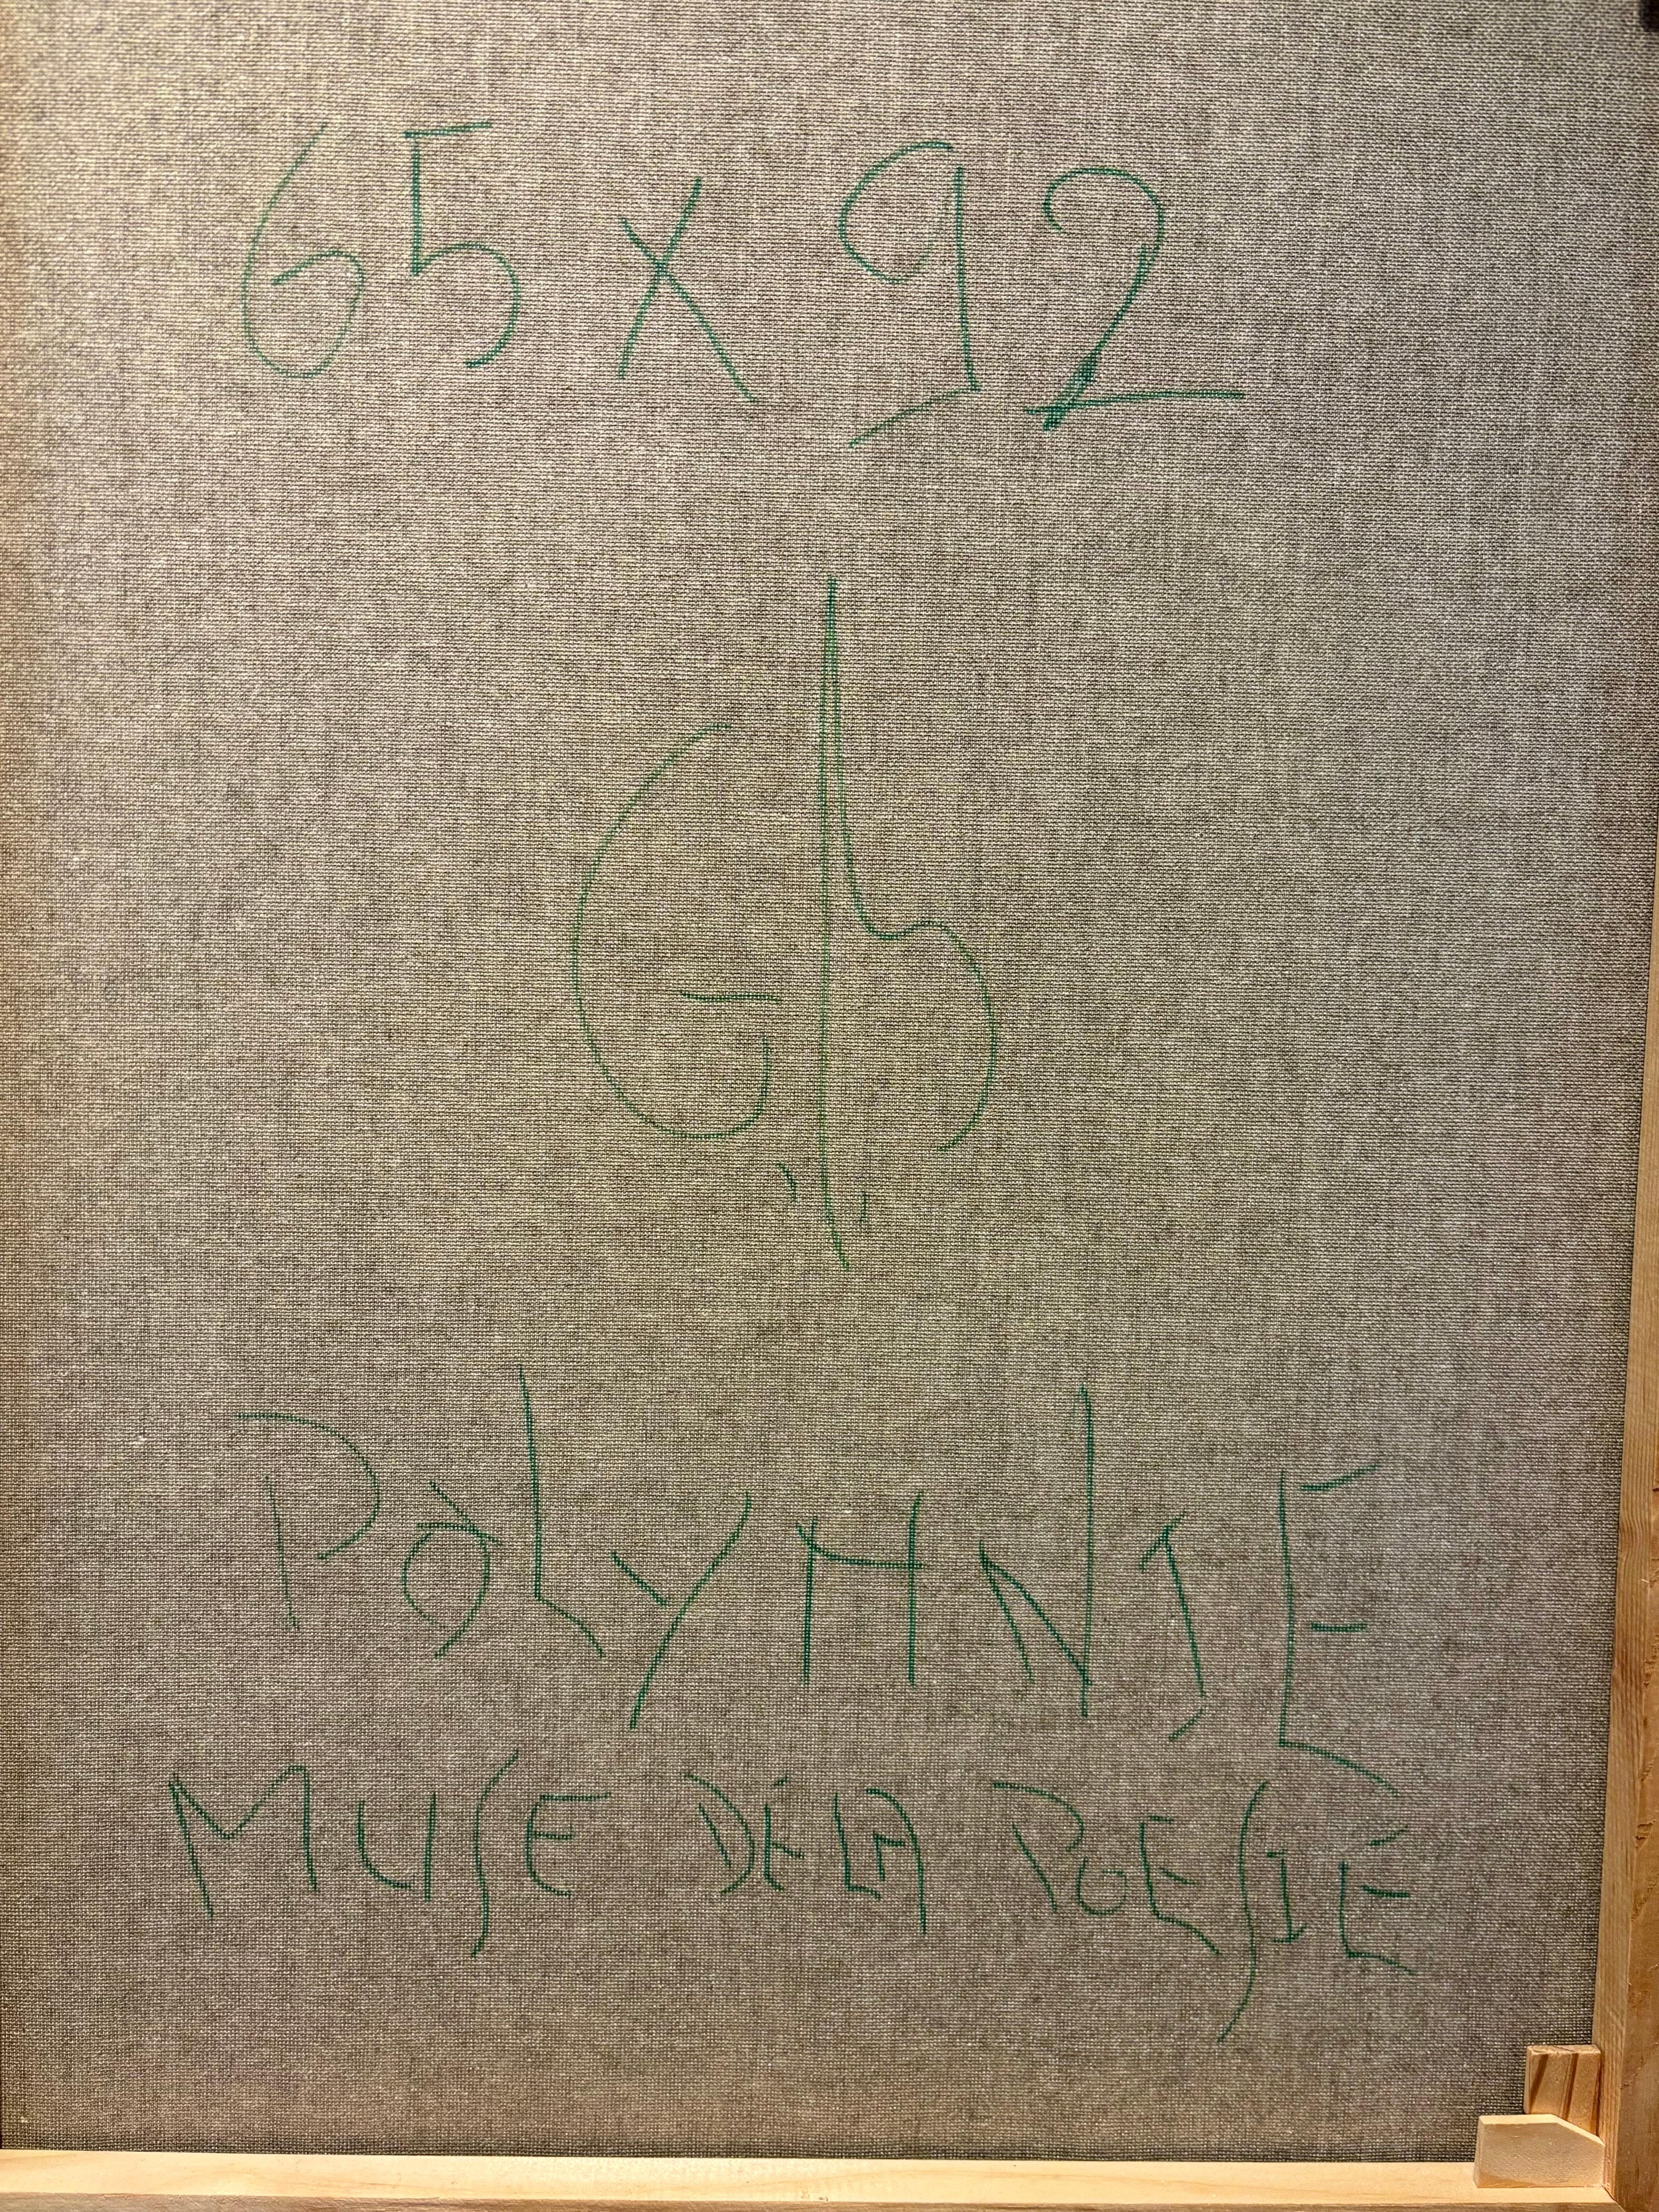 Polymnie, Muse de la poésie. / Polymnie, Muse of poetry For Sale 3